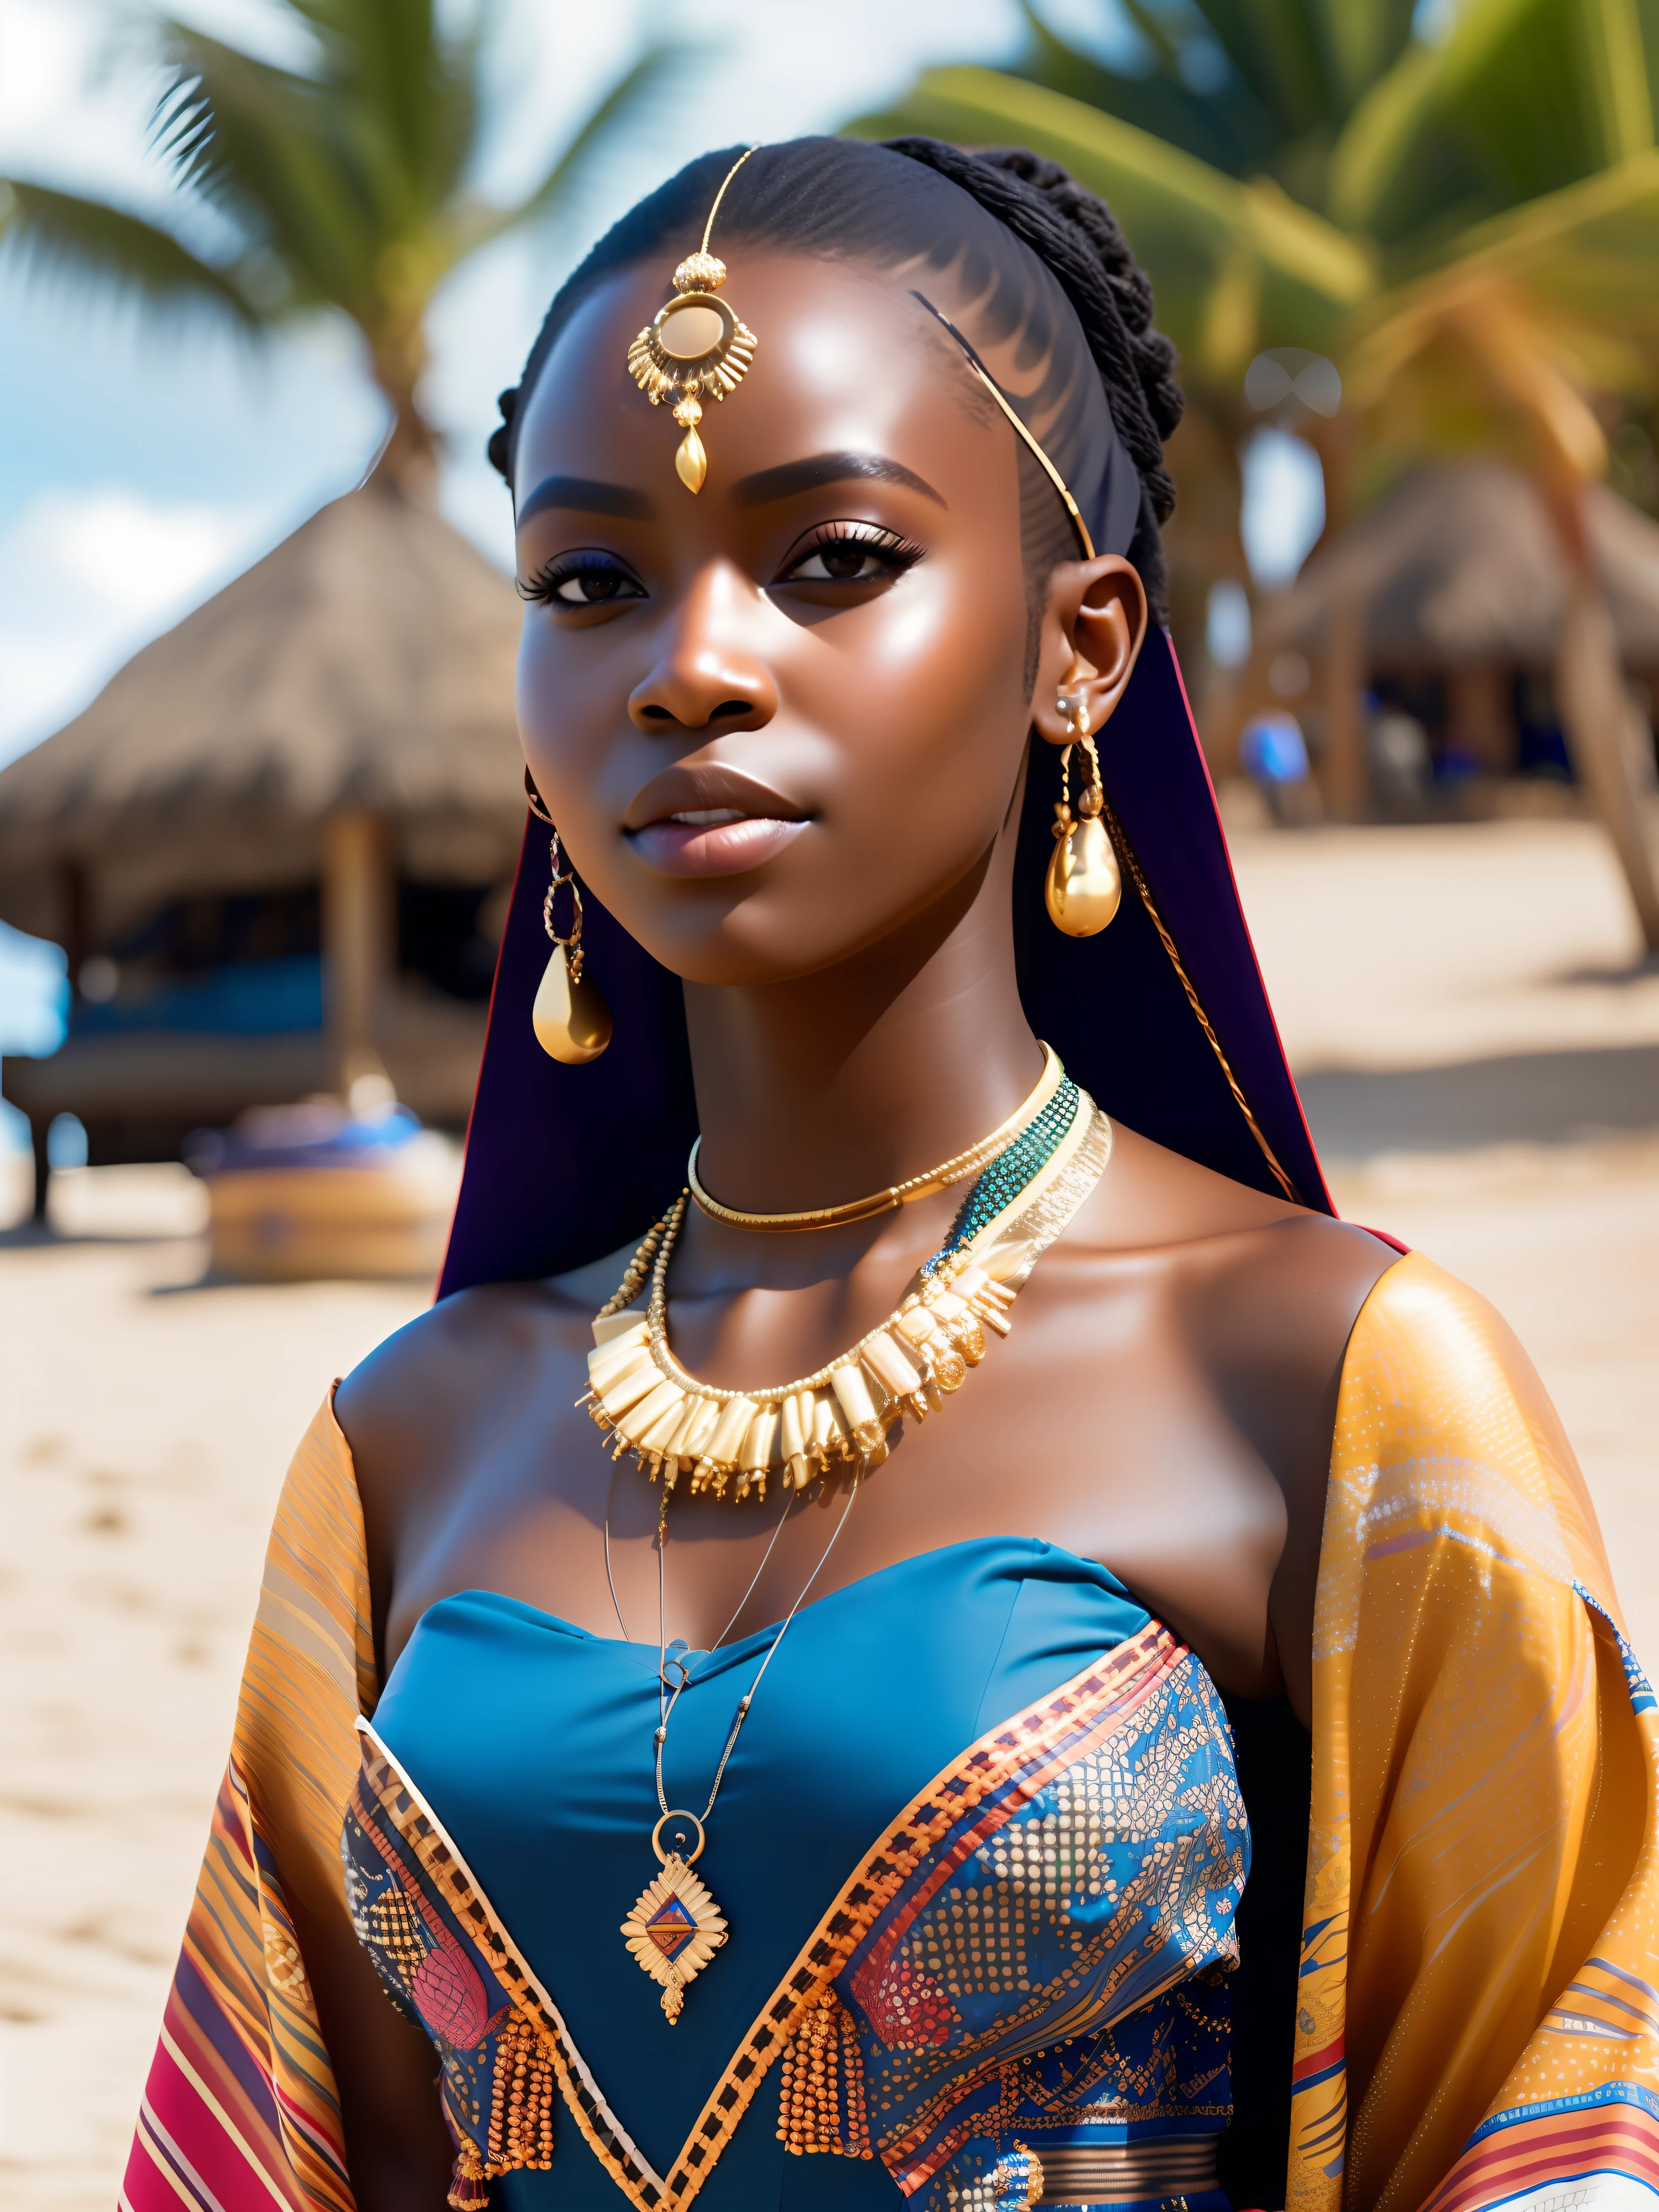 จริงสิ_ไซไฟ, จริงสิ_ไซไฟ_V2, แนวของหญิงสาวชาวแอฟริกันที่สวยงามมากหน้าชายหาด, เสื้อผ้าสีสันสดใส, เครื่องประดับทองคำแอฟริกัน, ใกล้ชิด, ท่าทางและทัศนคติของกษัตริย์. จริงสิ_โรงหนัง_V2. จริงสิ_โรงหนัง_V2